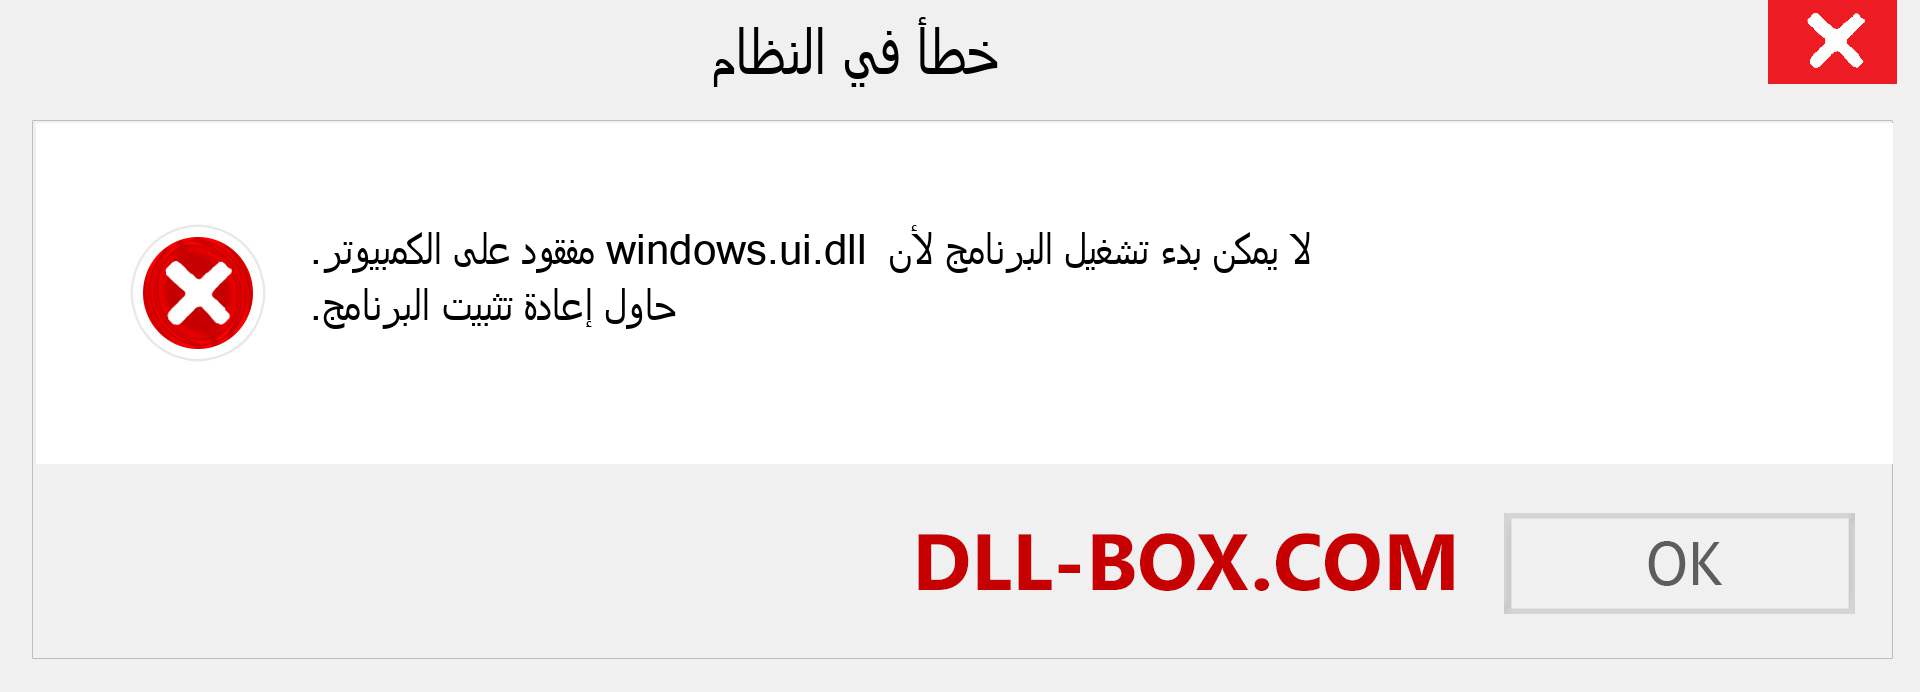 ملف windows.ui.dll مفقود ؟. التنزيل لنظام التشغيل Windows 7 و 8 و 10 - إصلاح خطأ windows.ui dll المفقود على Windows والصور والصور